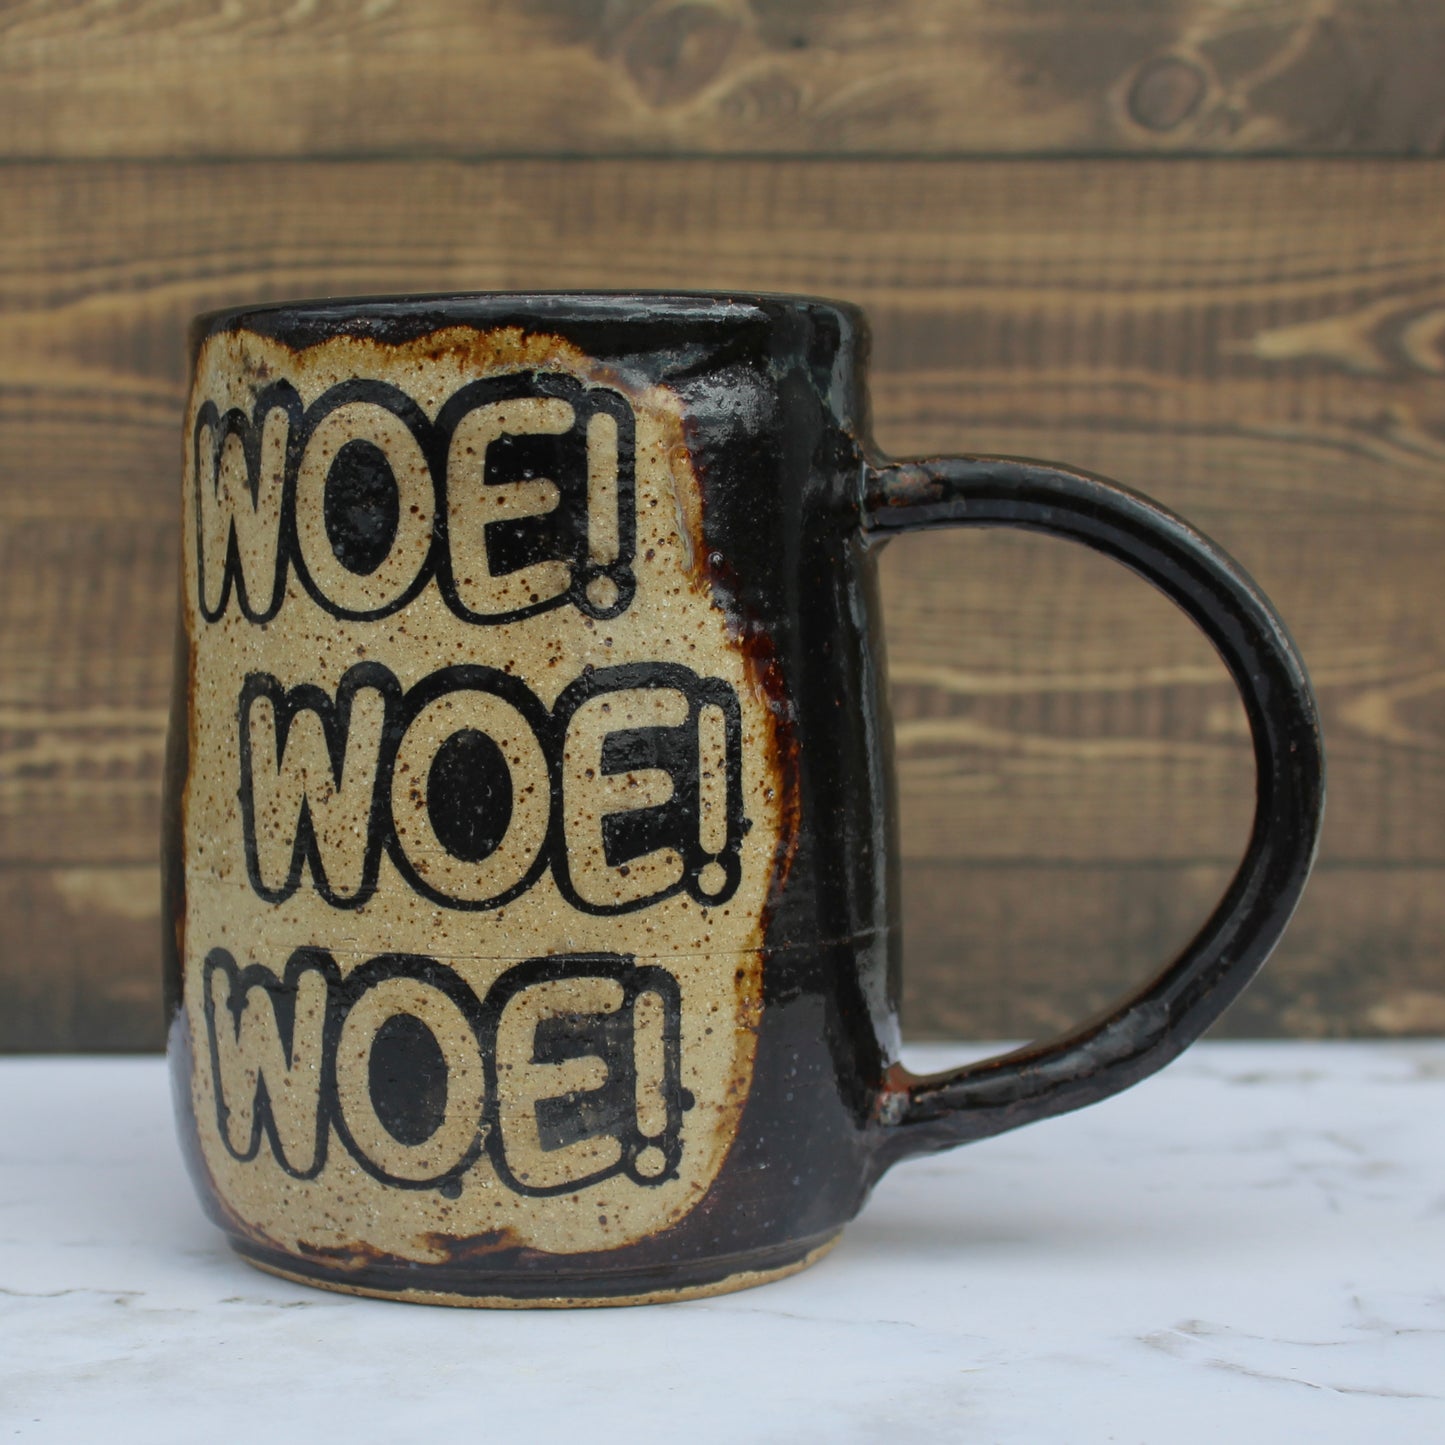 “Woe! Woe! Woe!” Mug